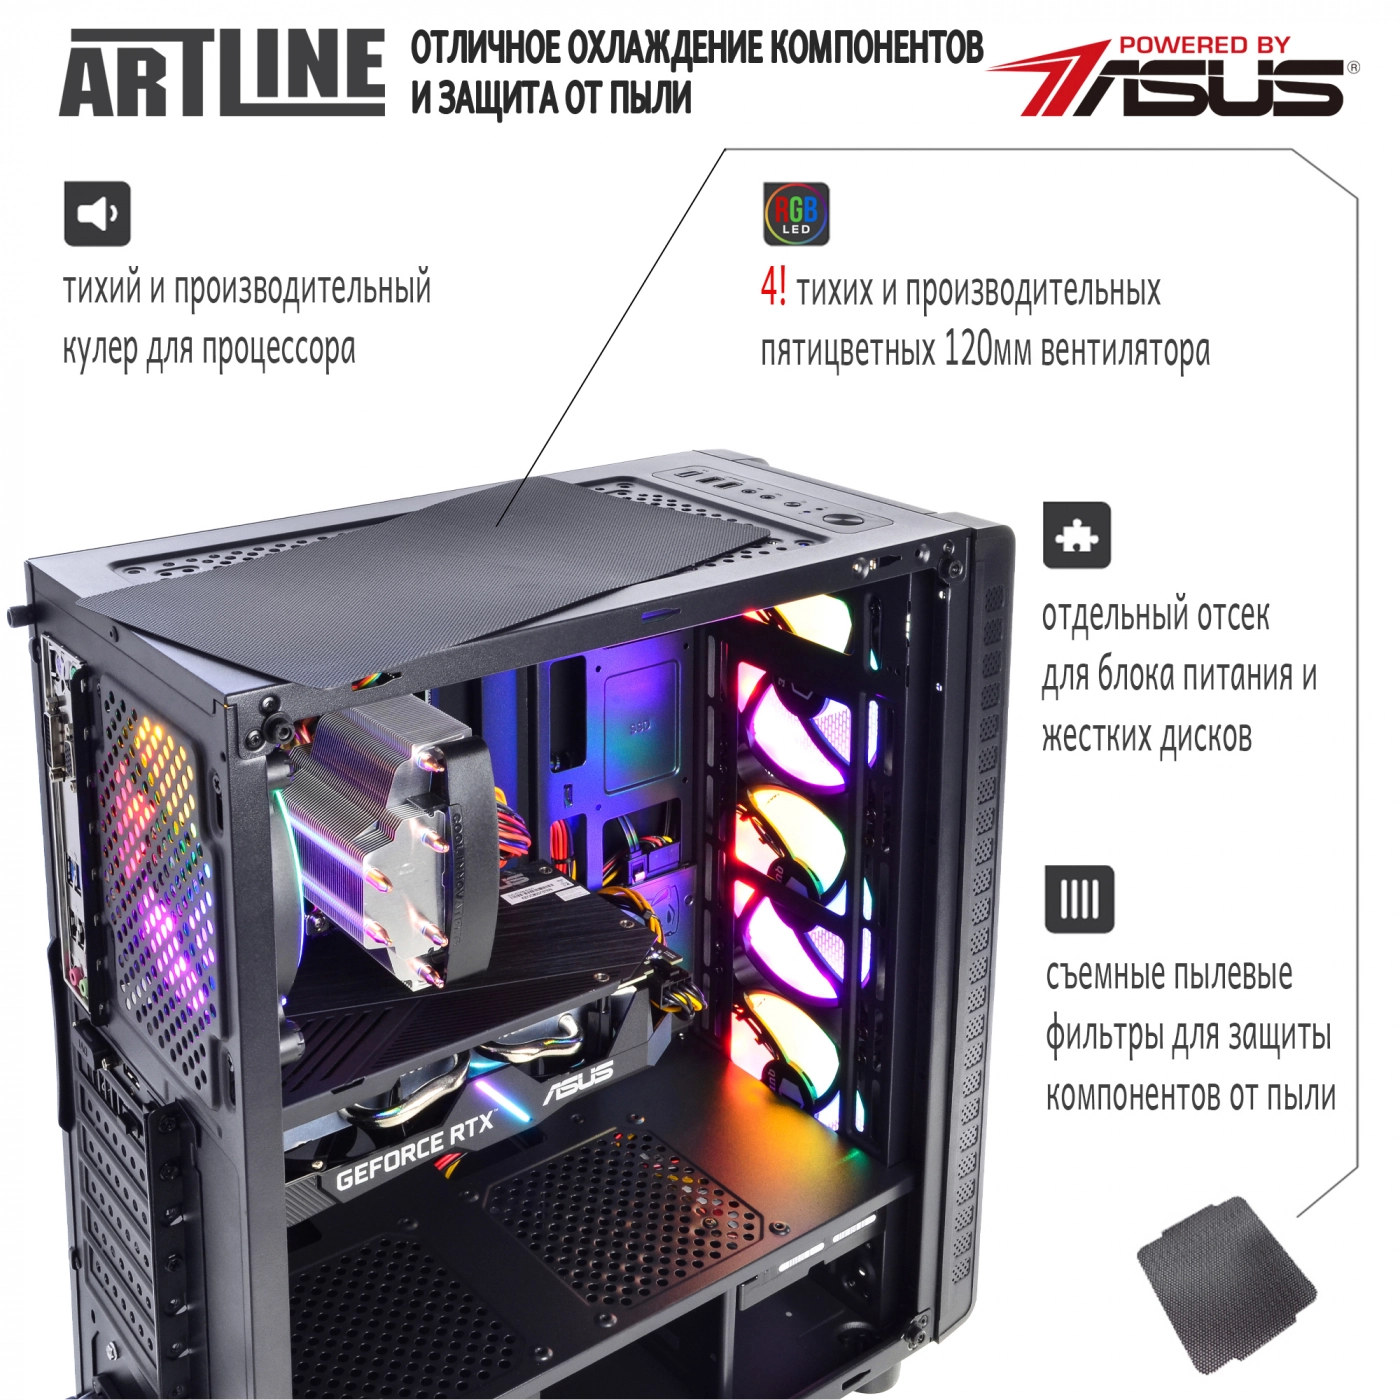 Купить Компьютер ARTLINE Gaming X44v20 - фото 4